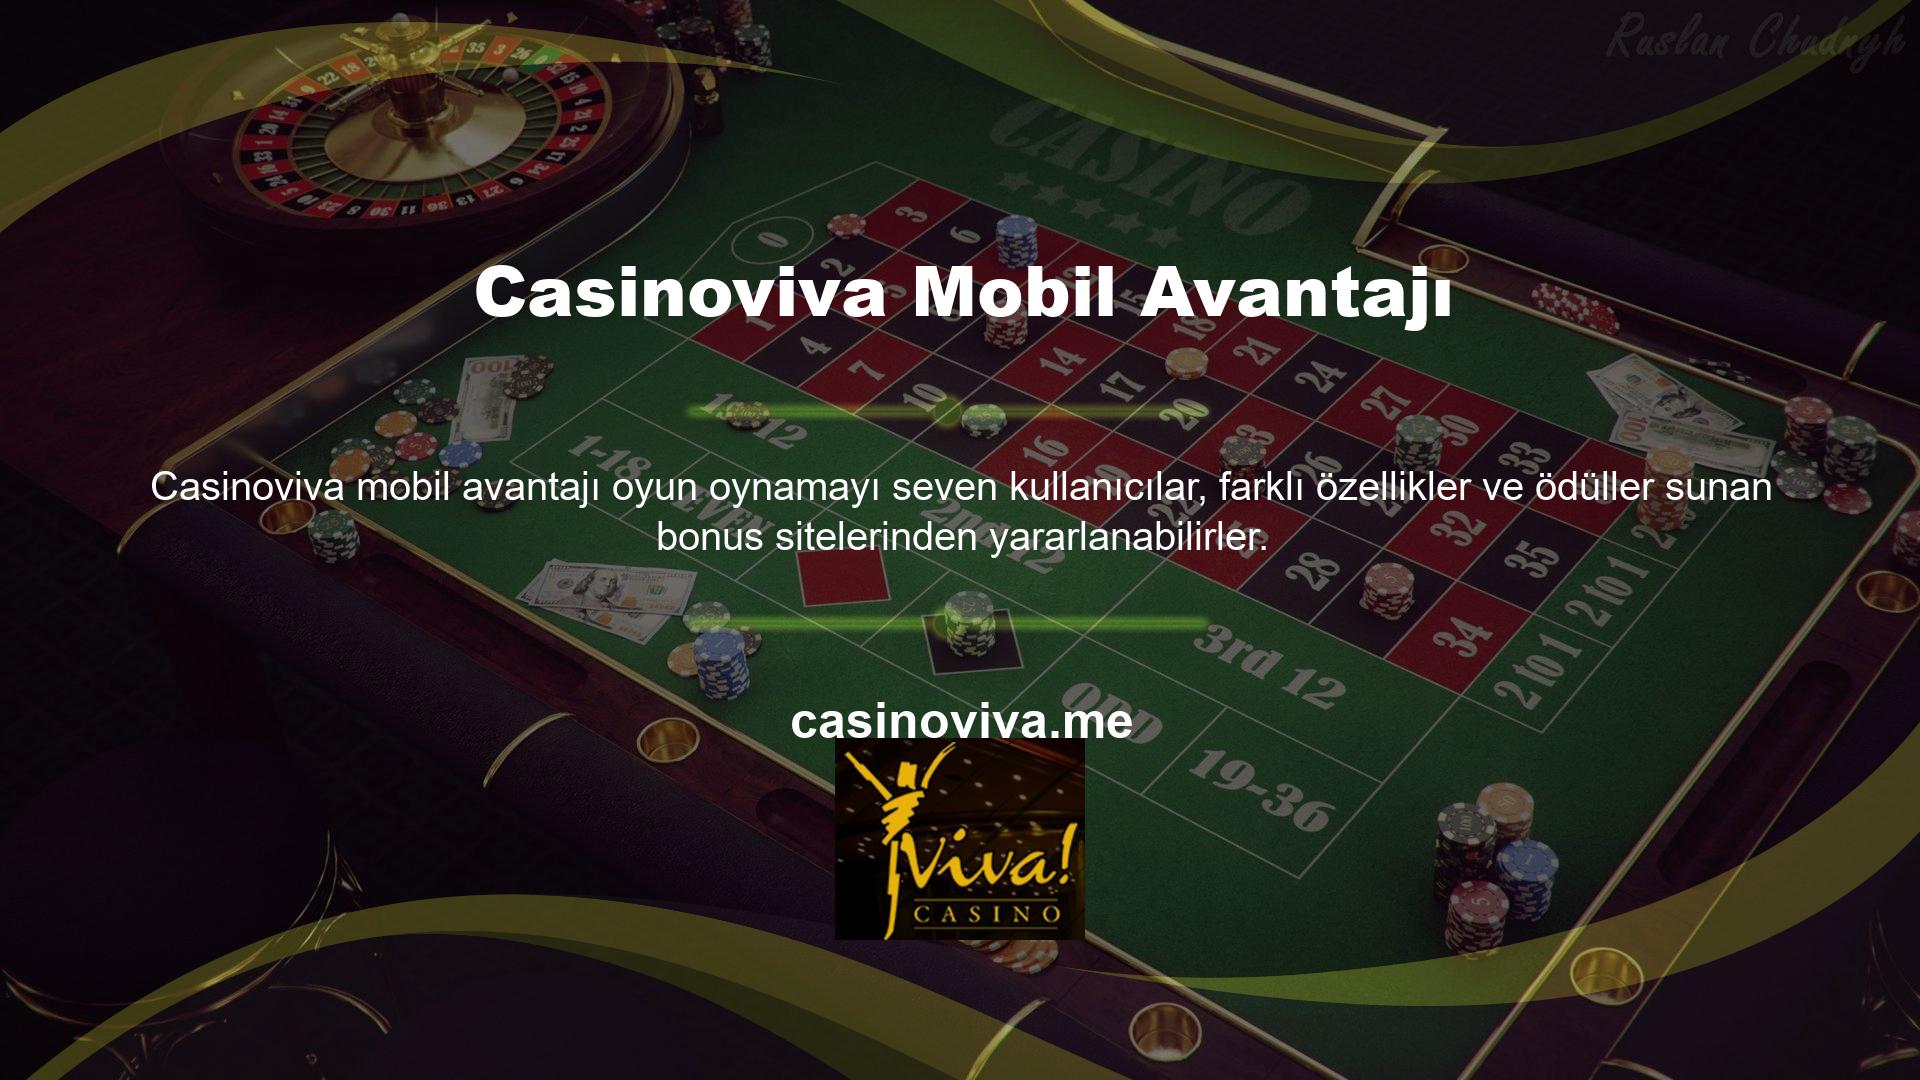 Bu avantajlara ek olarak kullanıcılar Casinoviva hiçbir ücret ödemeden bahis oynayabilir mi? Ödül sitesi kullanıcılarına sadece ödül kazanma olanağı sağlamakla kalmıyor, aynı zamanda kendi web siteleri üzerinden de ödül kazanma fırsatını sunuyor